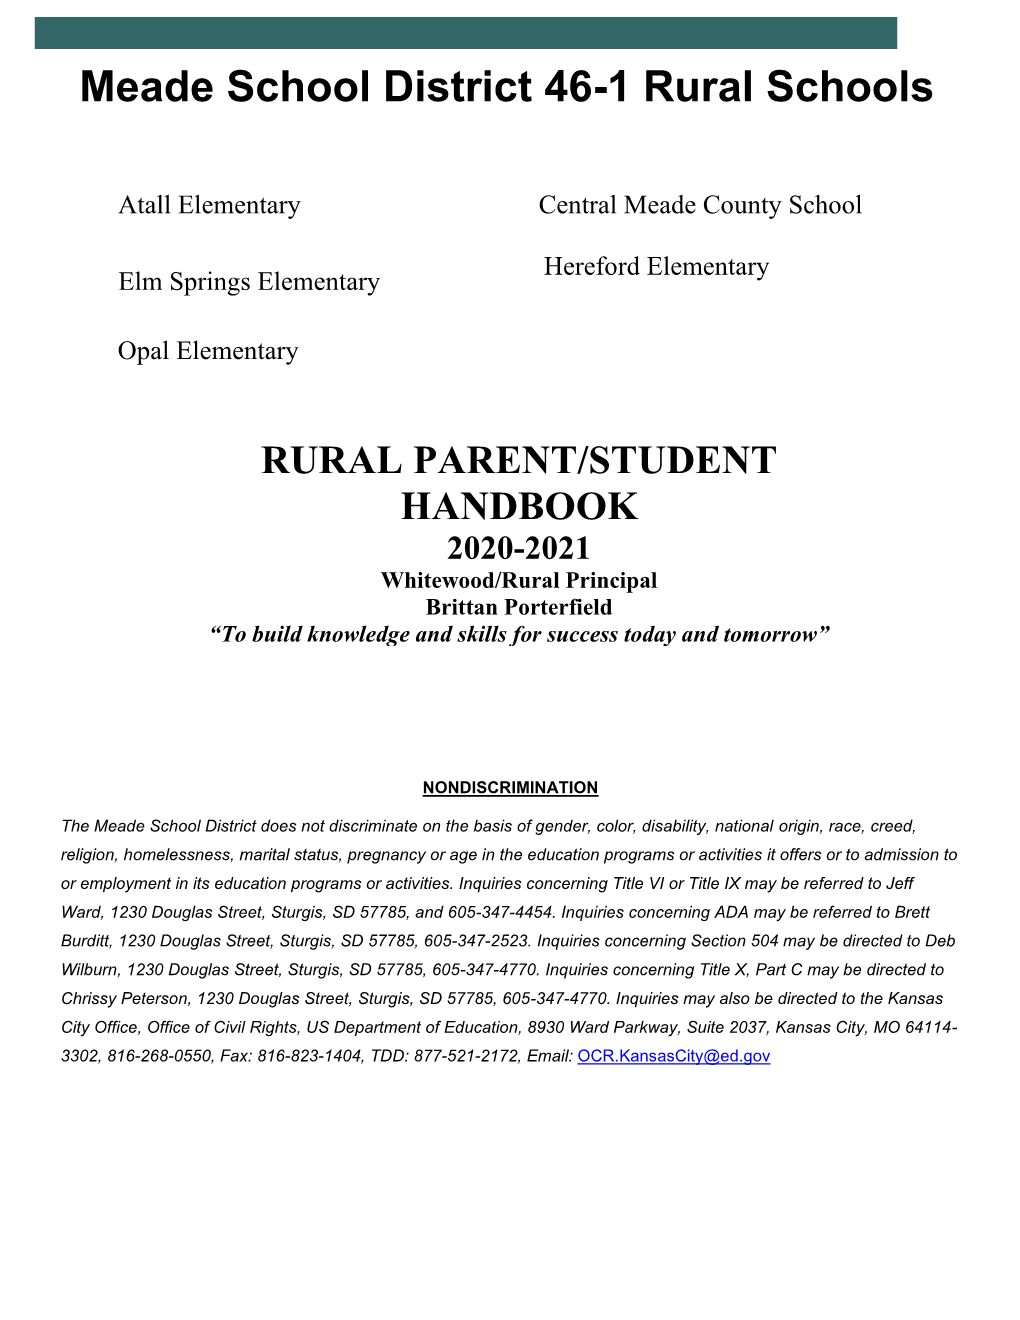 Rural Schools 2020-21 Handbook